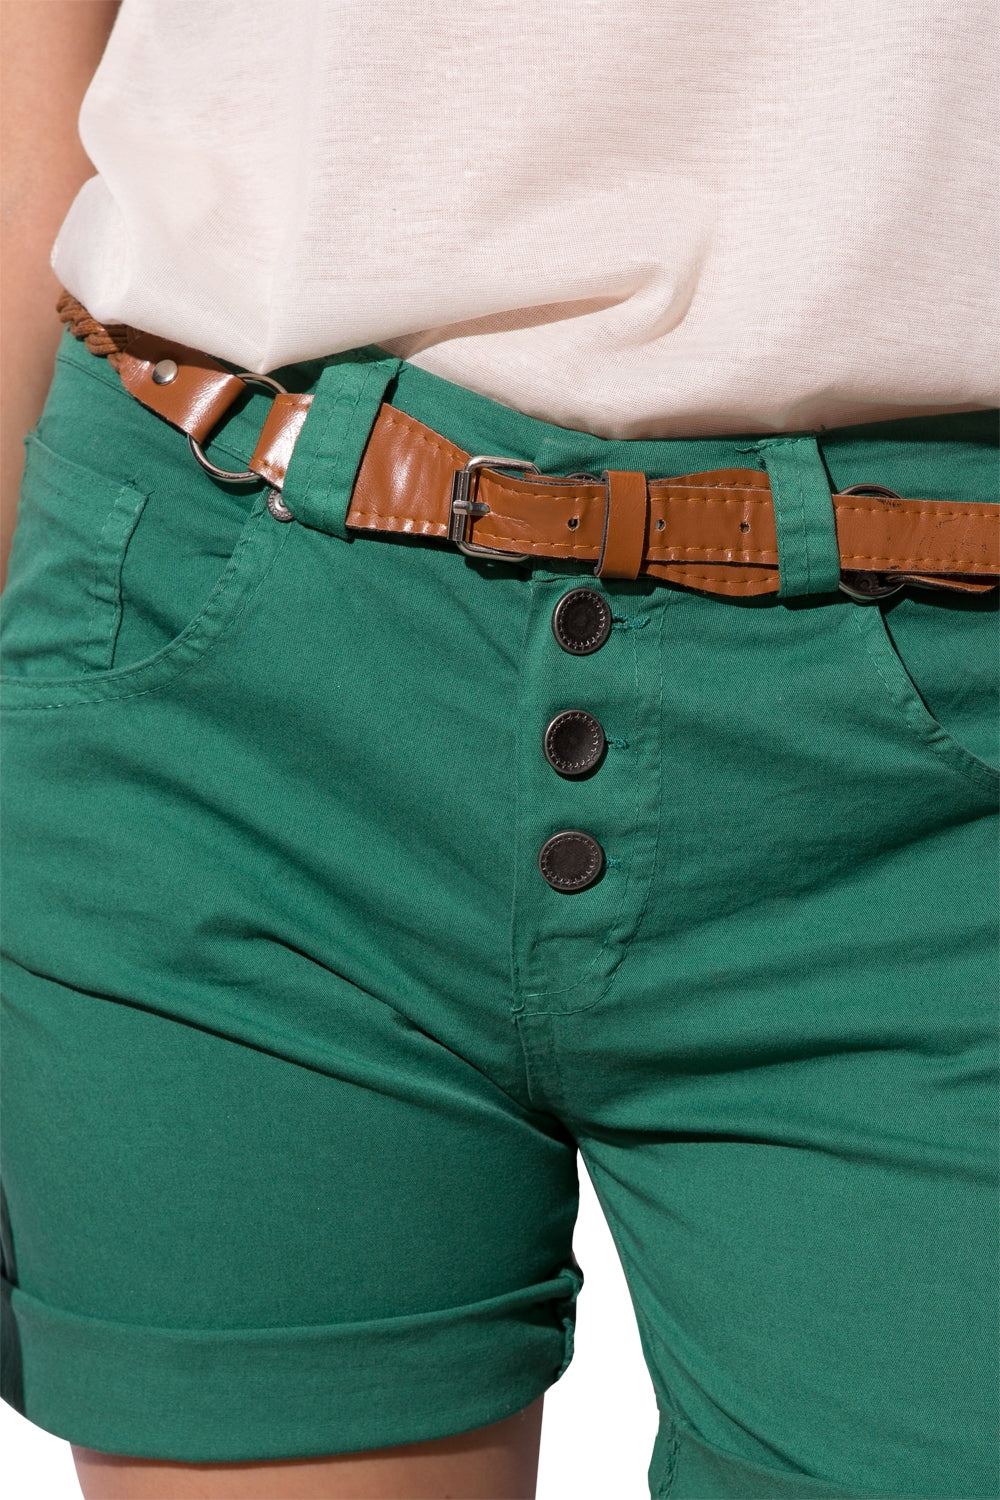 groene korte broek met zichtbare knopen